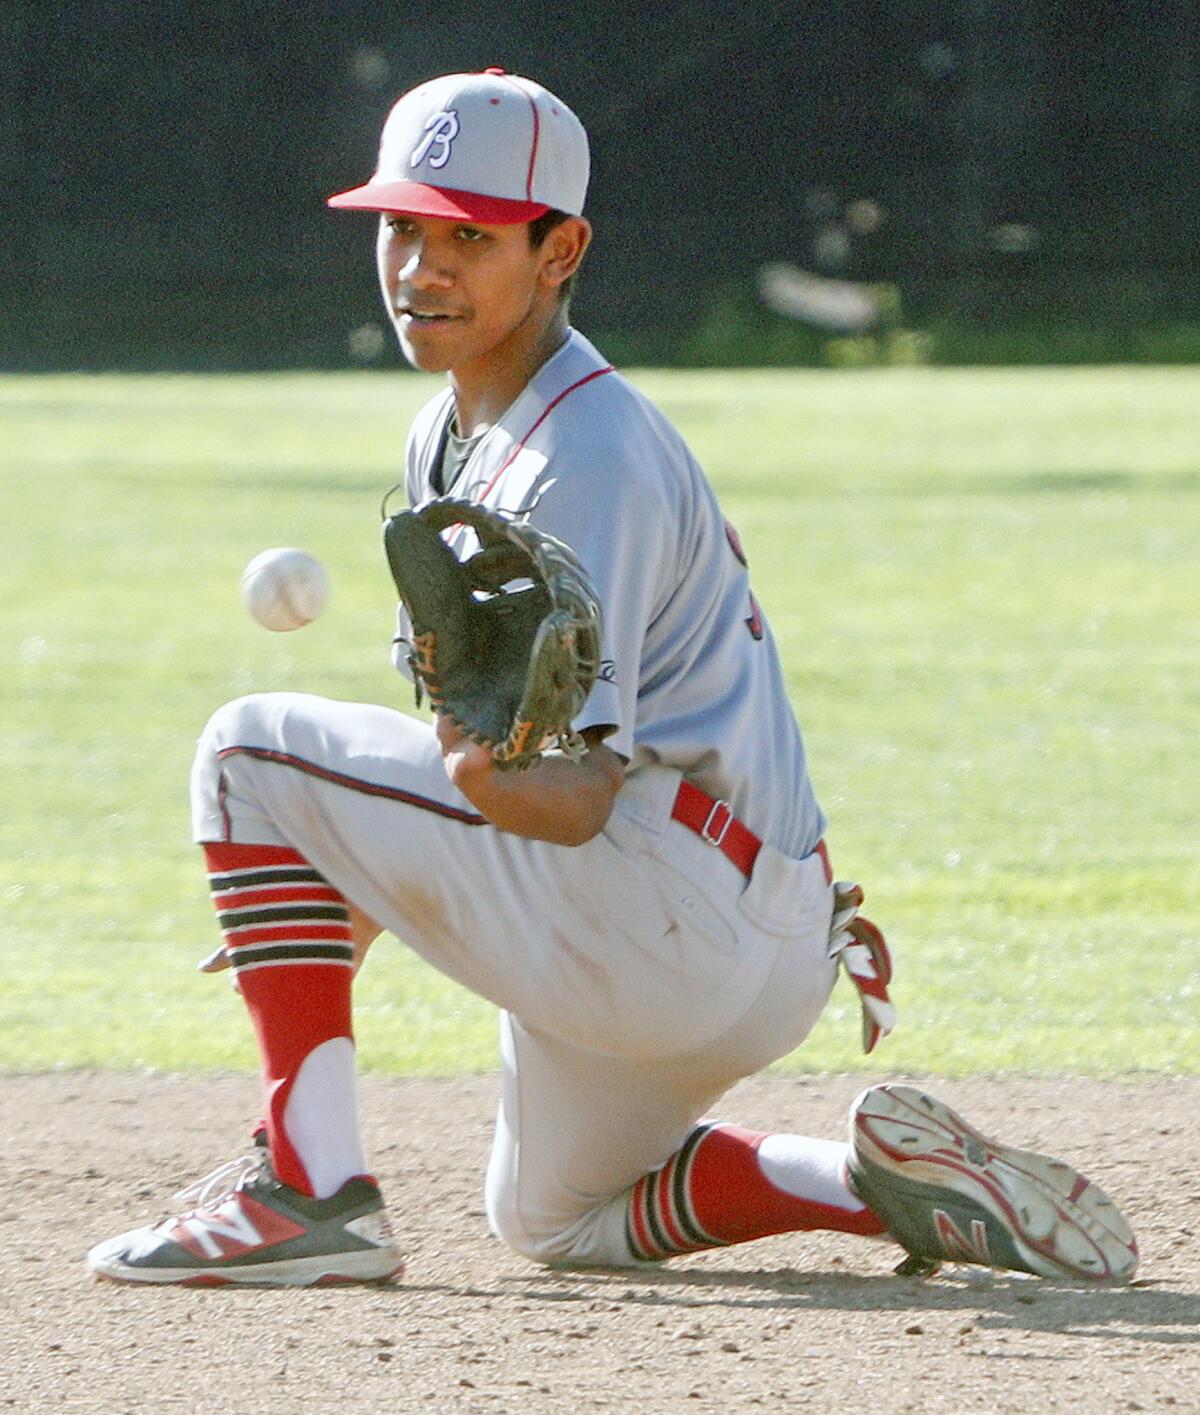 Brian Garcia is a key returner this season for the Burroughs High baseball team.